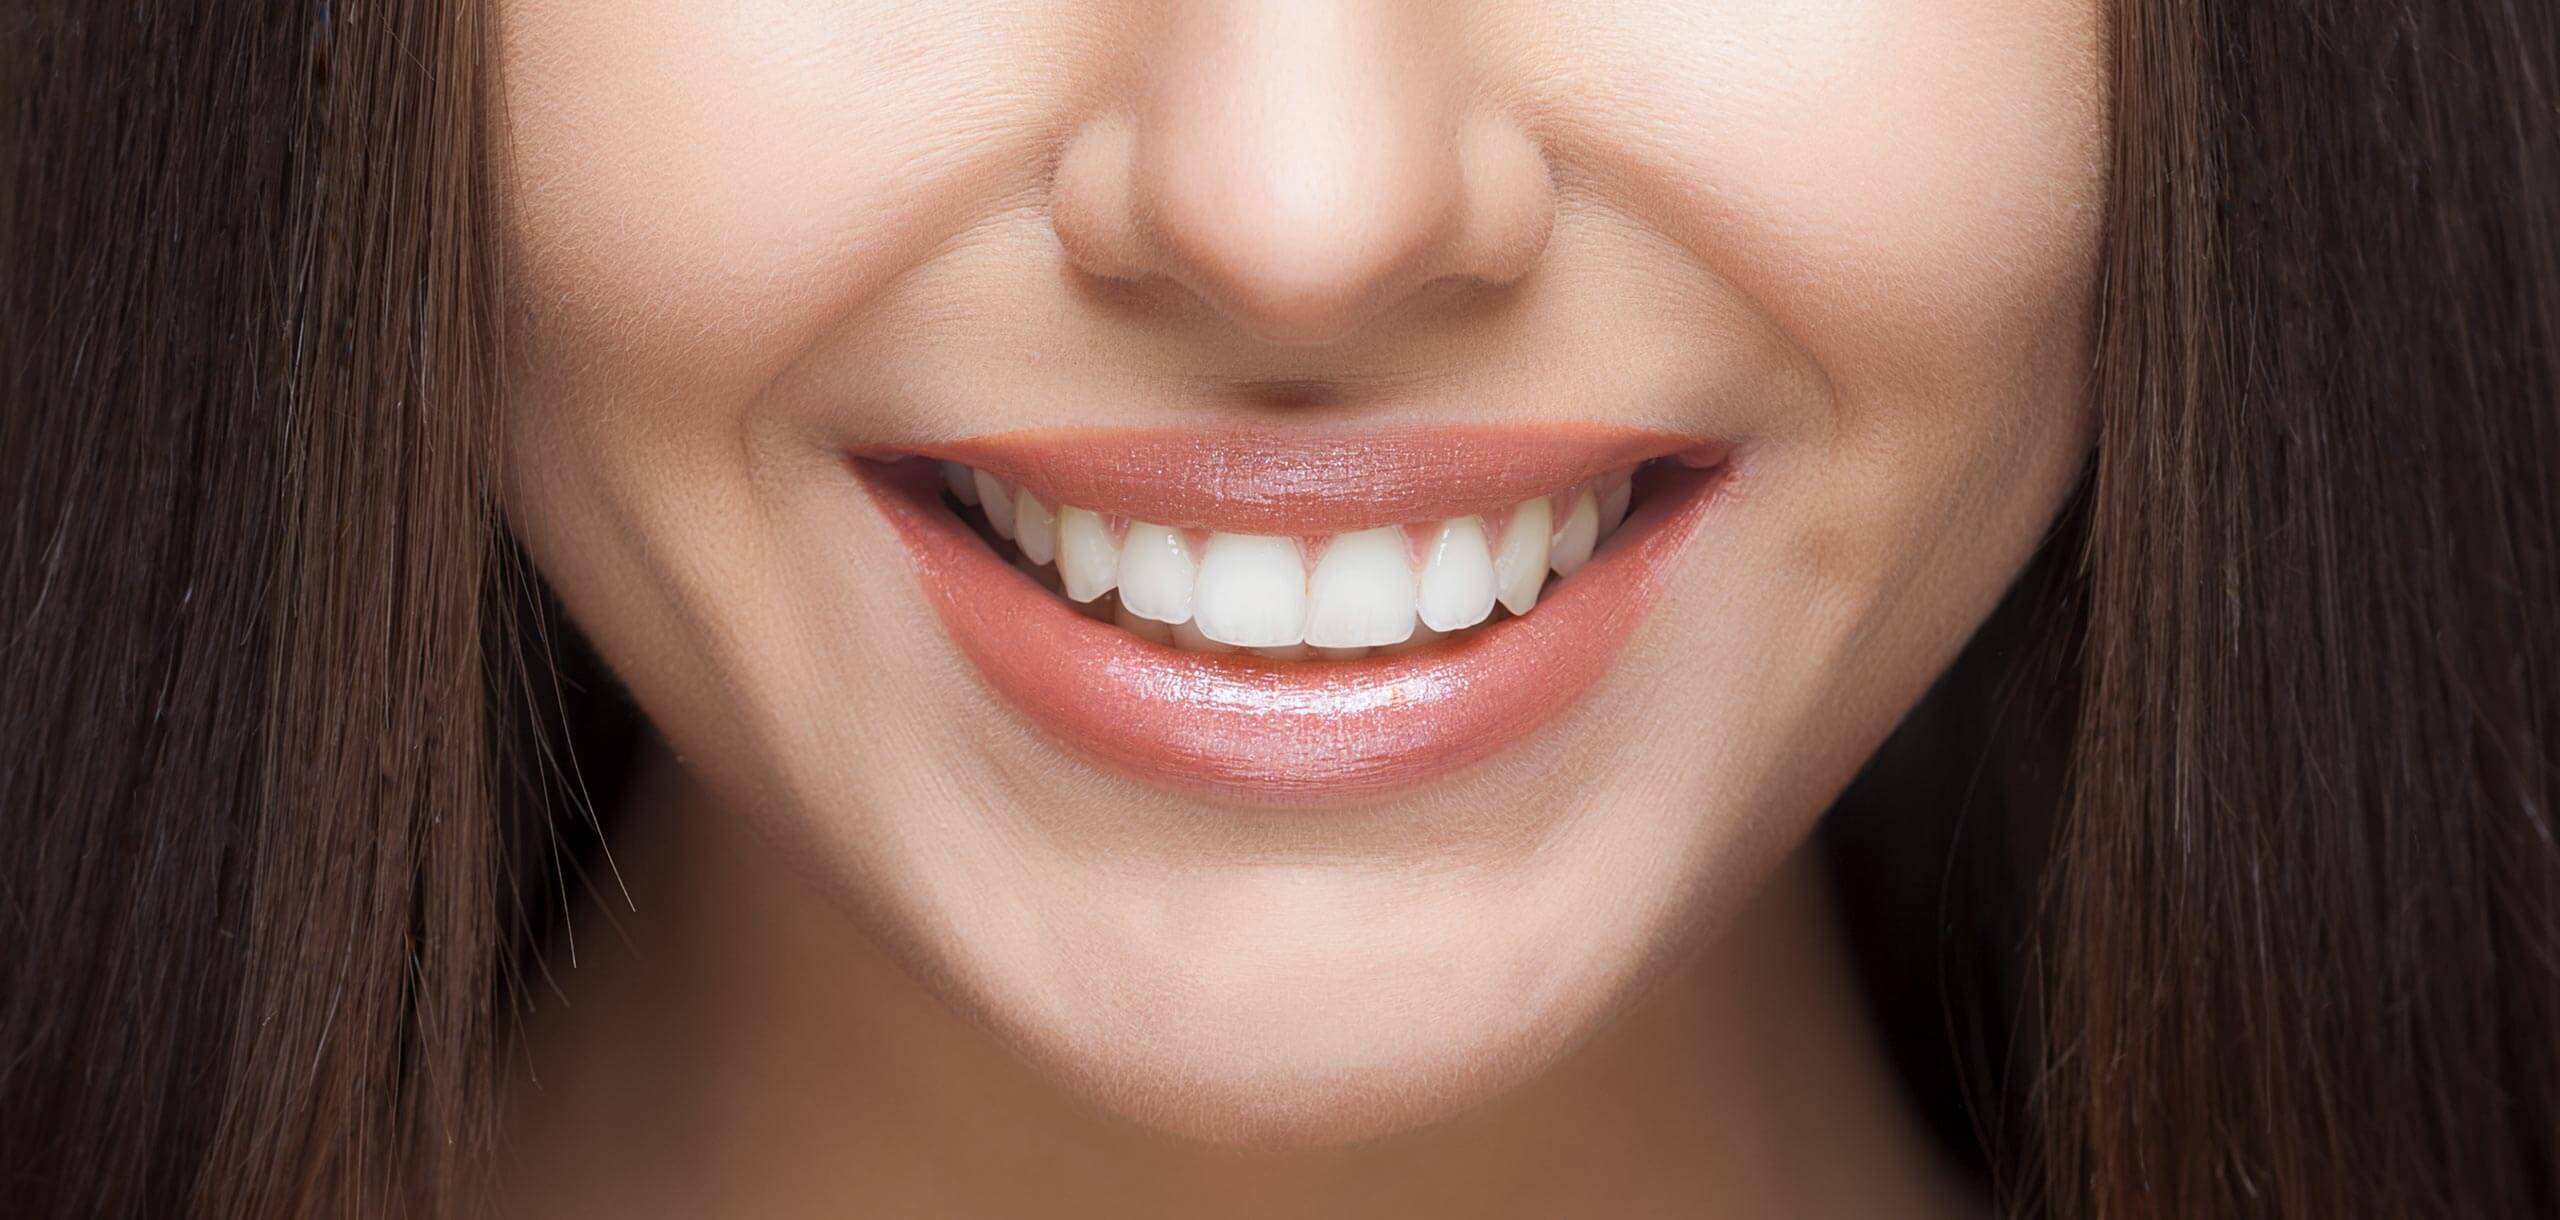 Vitare tänder: Vilka är dina alternativ